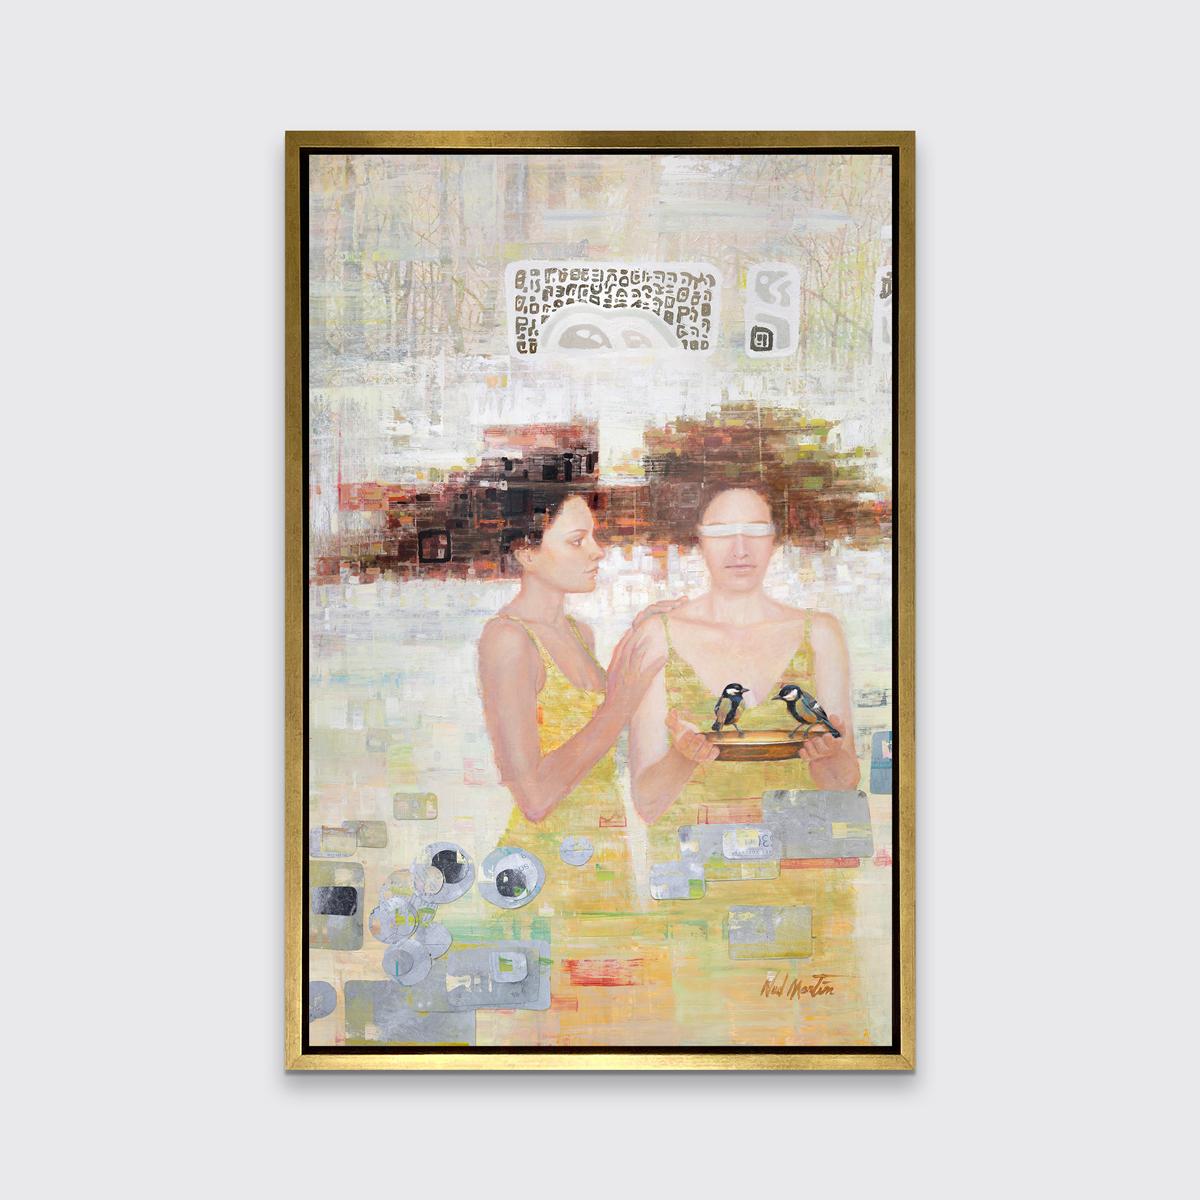 Dieser abstrakte figurale Druck in limitierter Auflage von Ned Martin zeichnet sich durch eine warme Farbpalette aus. Zwei Frauen stehen beieinander, die eine mit einem weißen Tuch vor den Augen und einem kleinen goldenen Teller, auf dem zwei Vögel